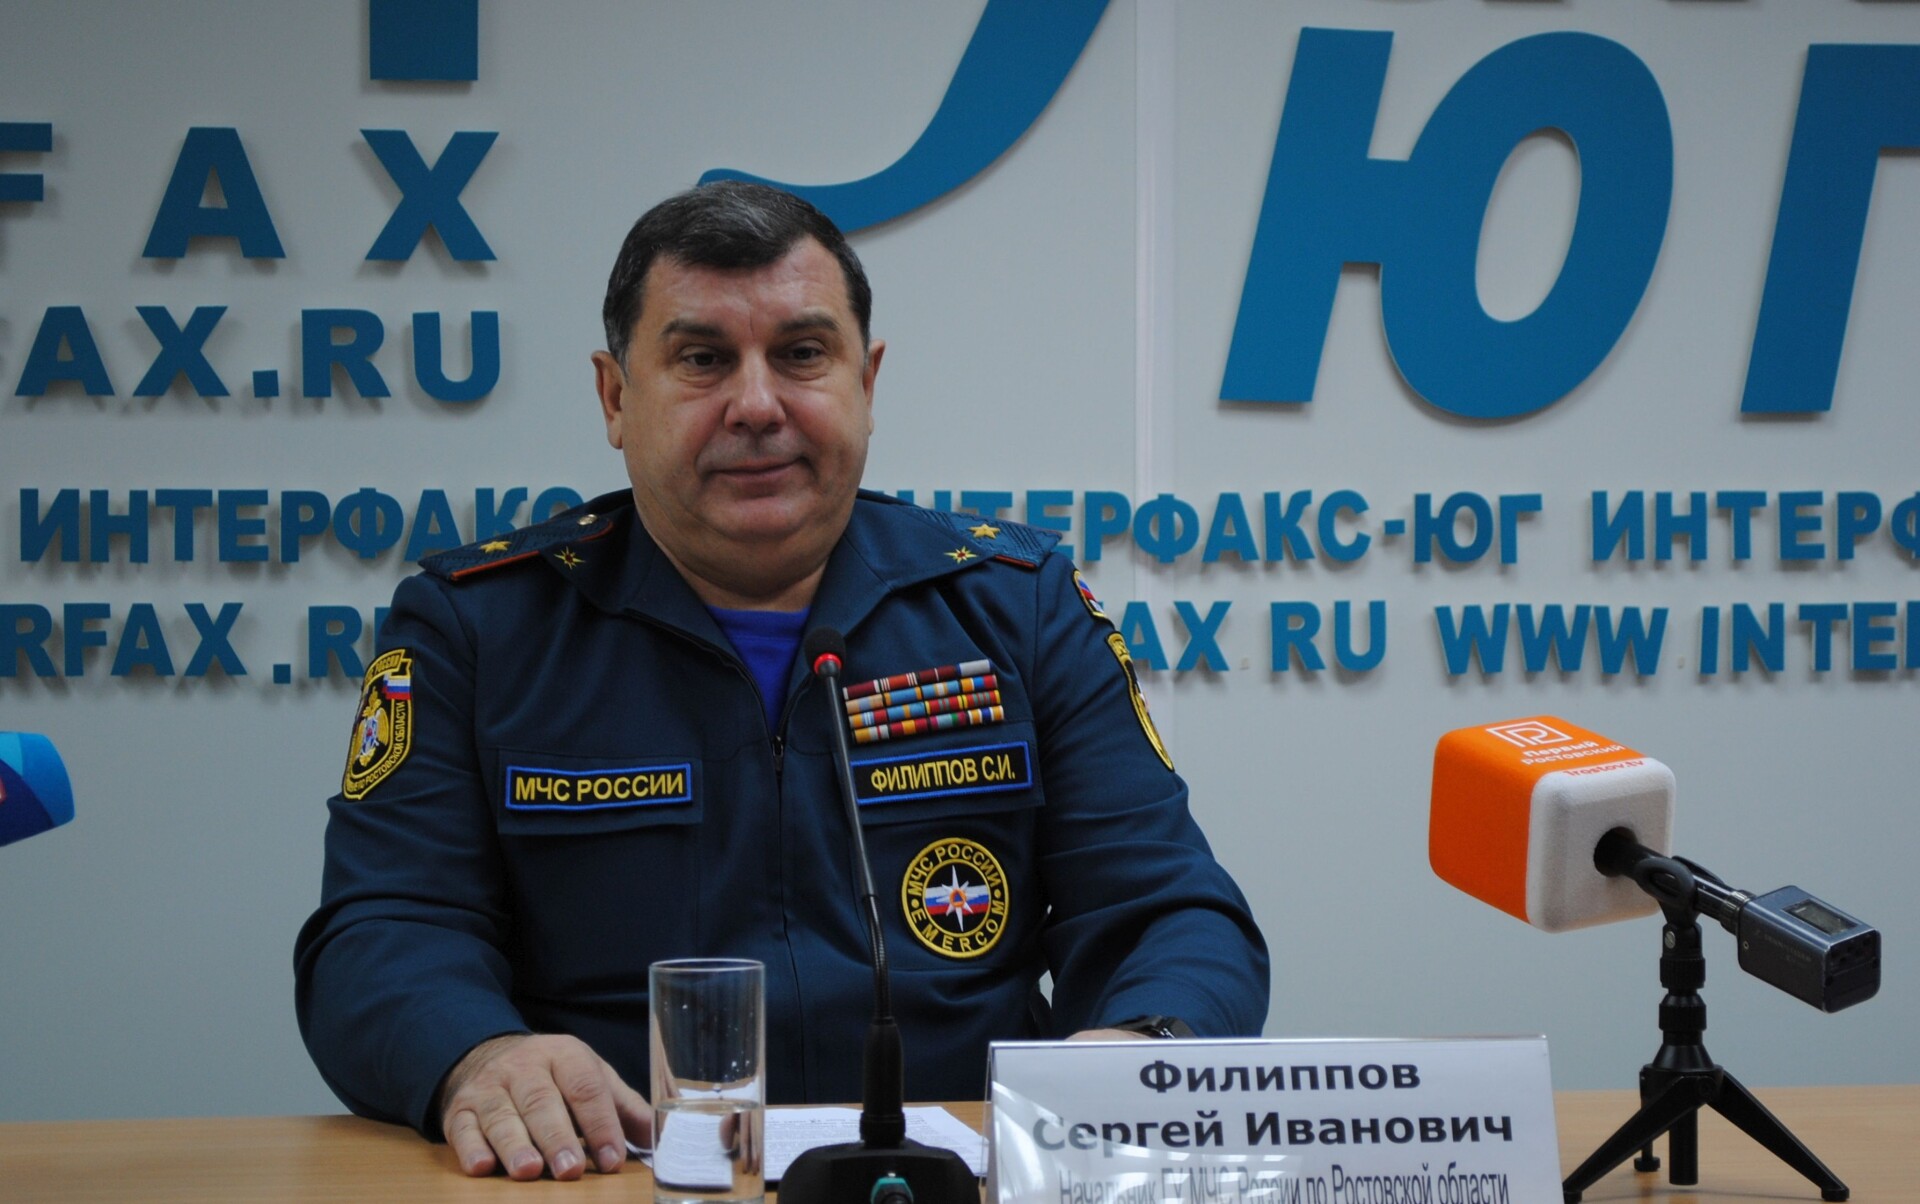 Количество пожаров в Ростовской области в 2021 году снизилось вдвое - МЧС